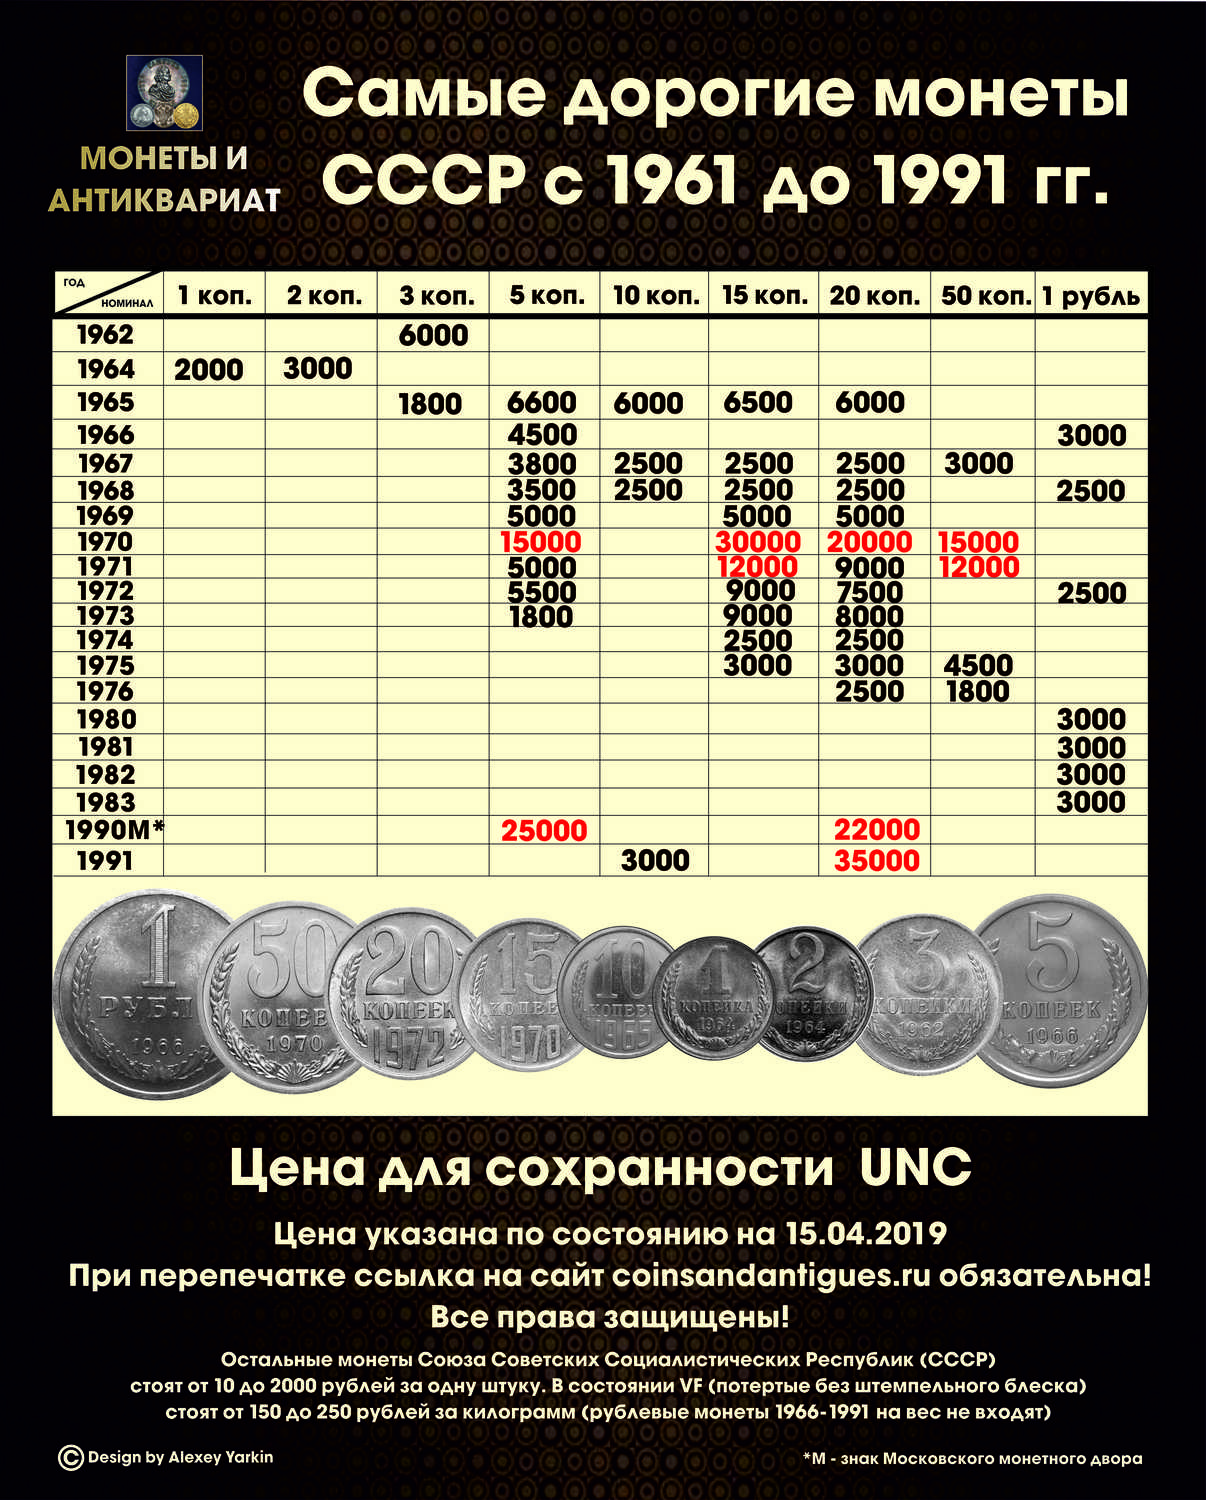 Сколько стоили продукты питания в 70-80е годы в советском союзе?